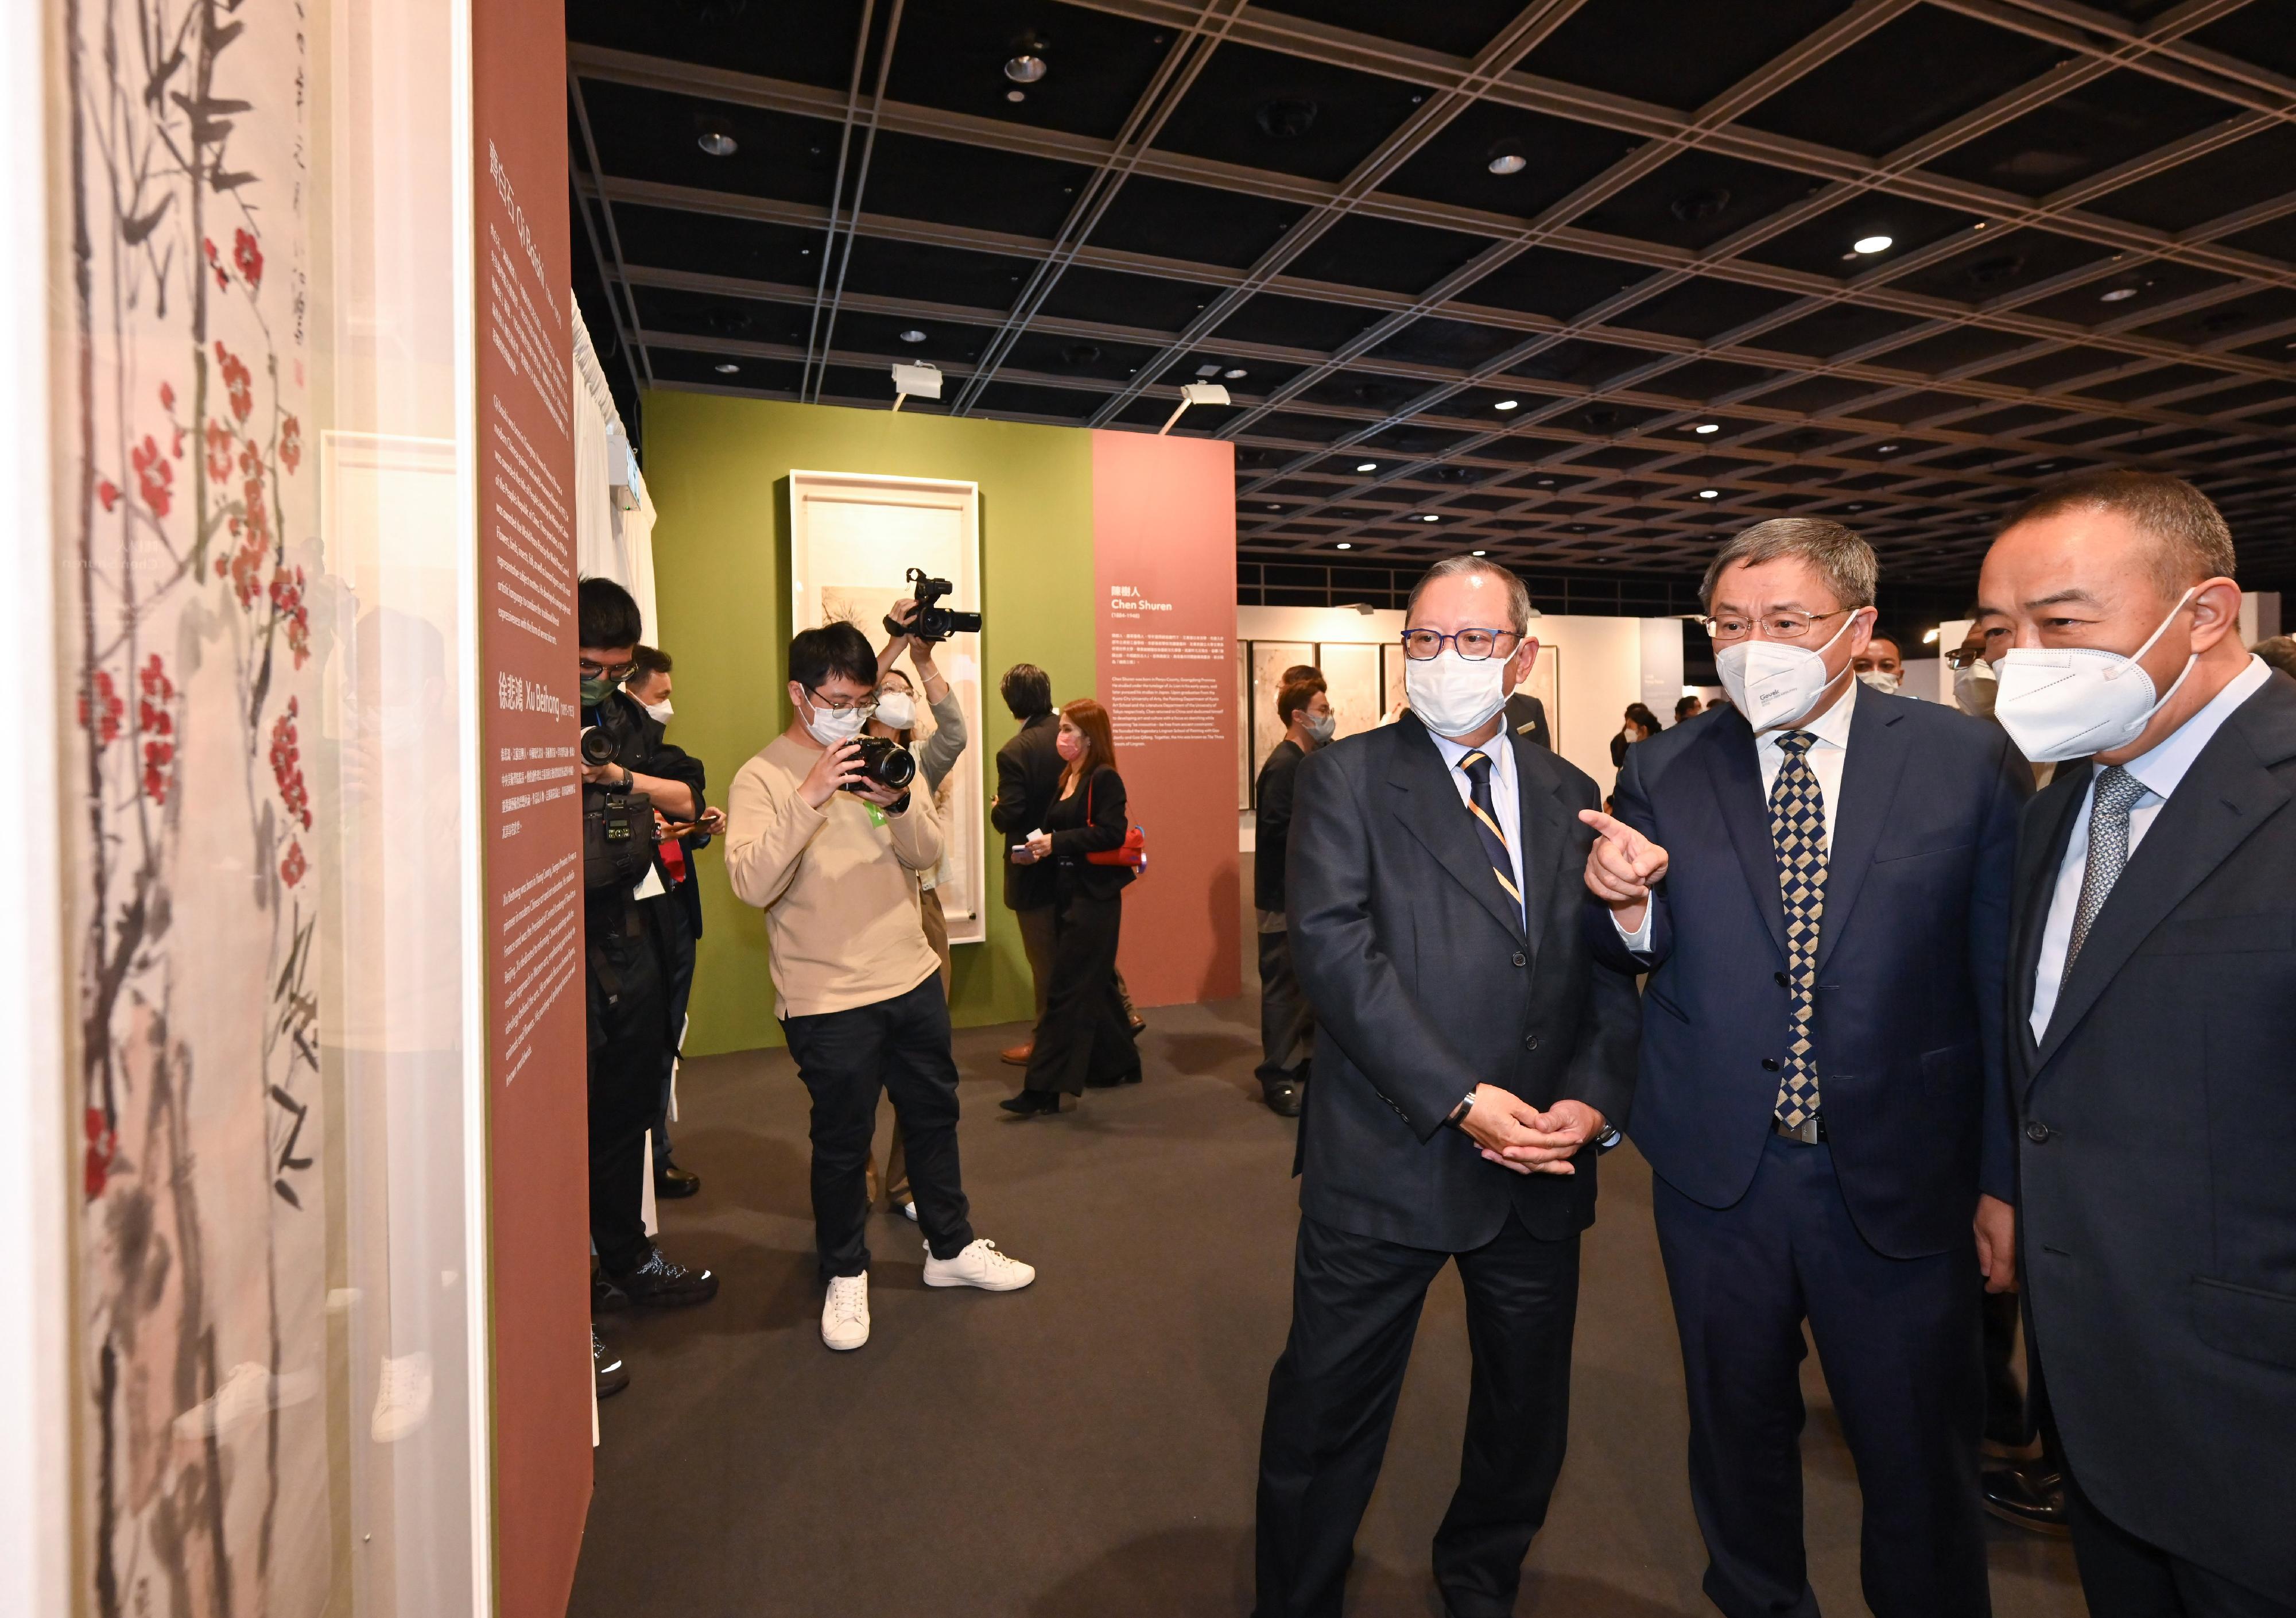 政務司副司長卓永興今日（十一月十六日）出席「藝文香港ART HK」藝術展覽及國際藝術論壇開幕儀式。圖示卓永興（右二）參觀「藝文香港ART HK」藝術展覽。